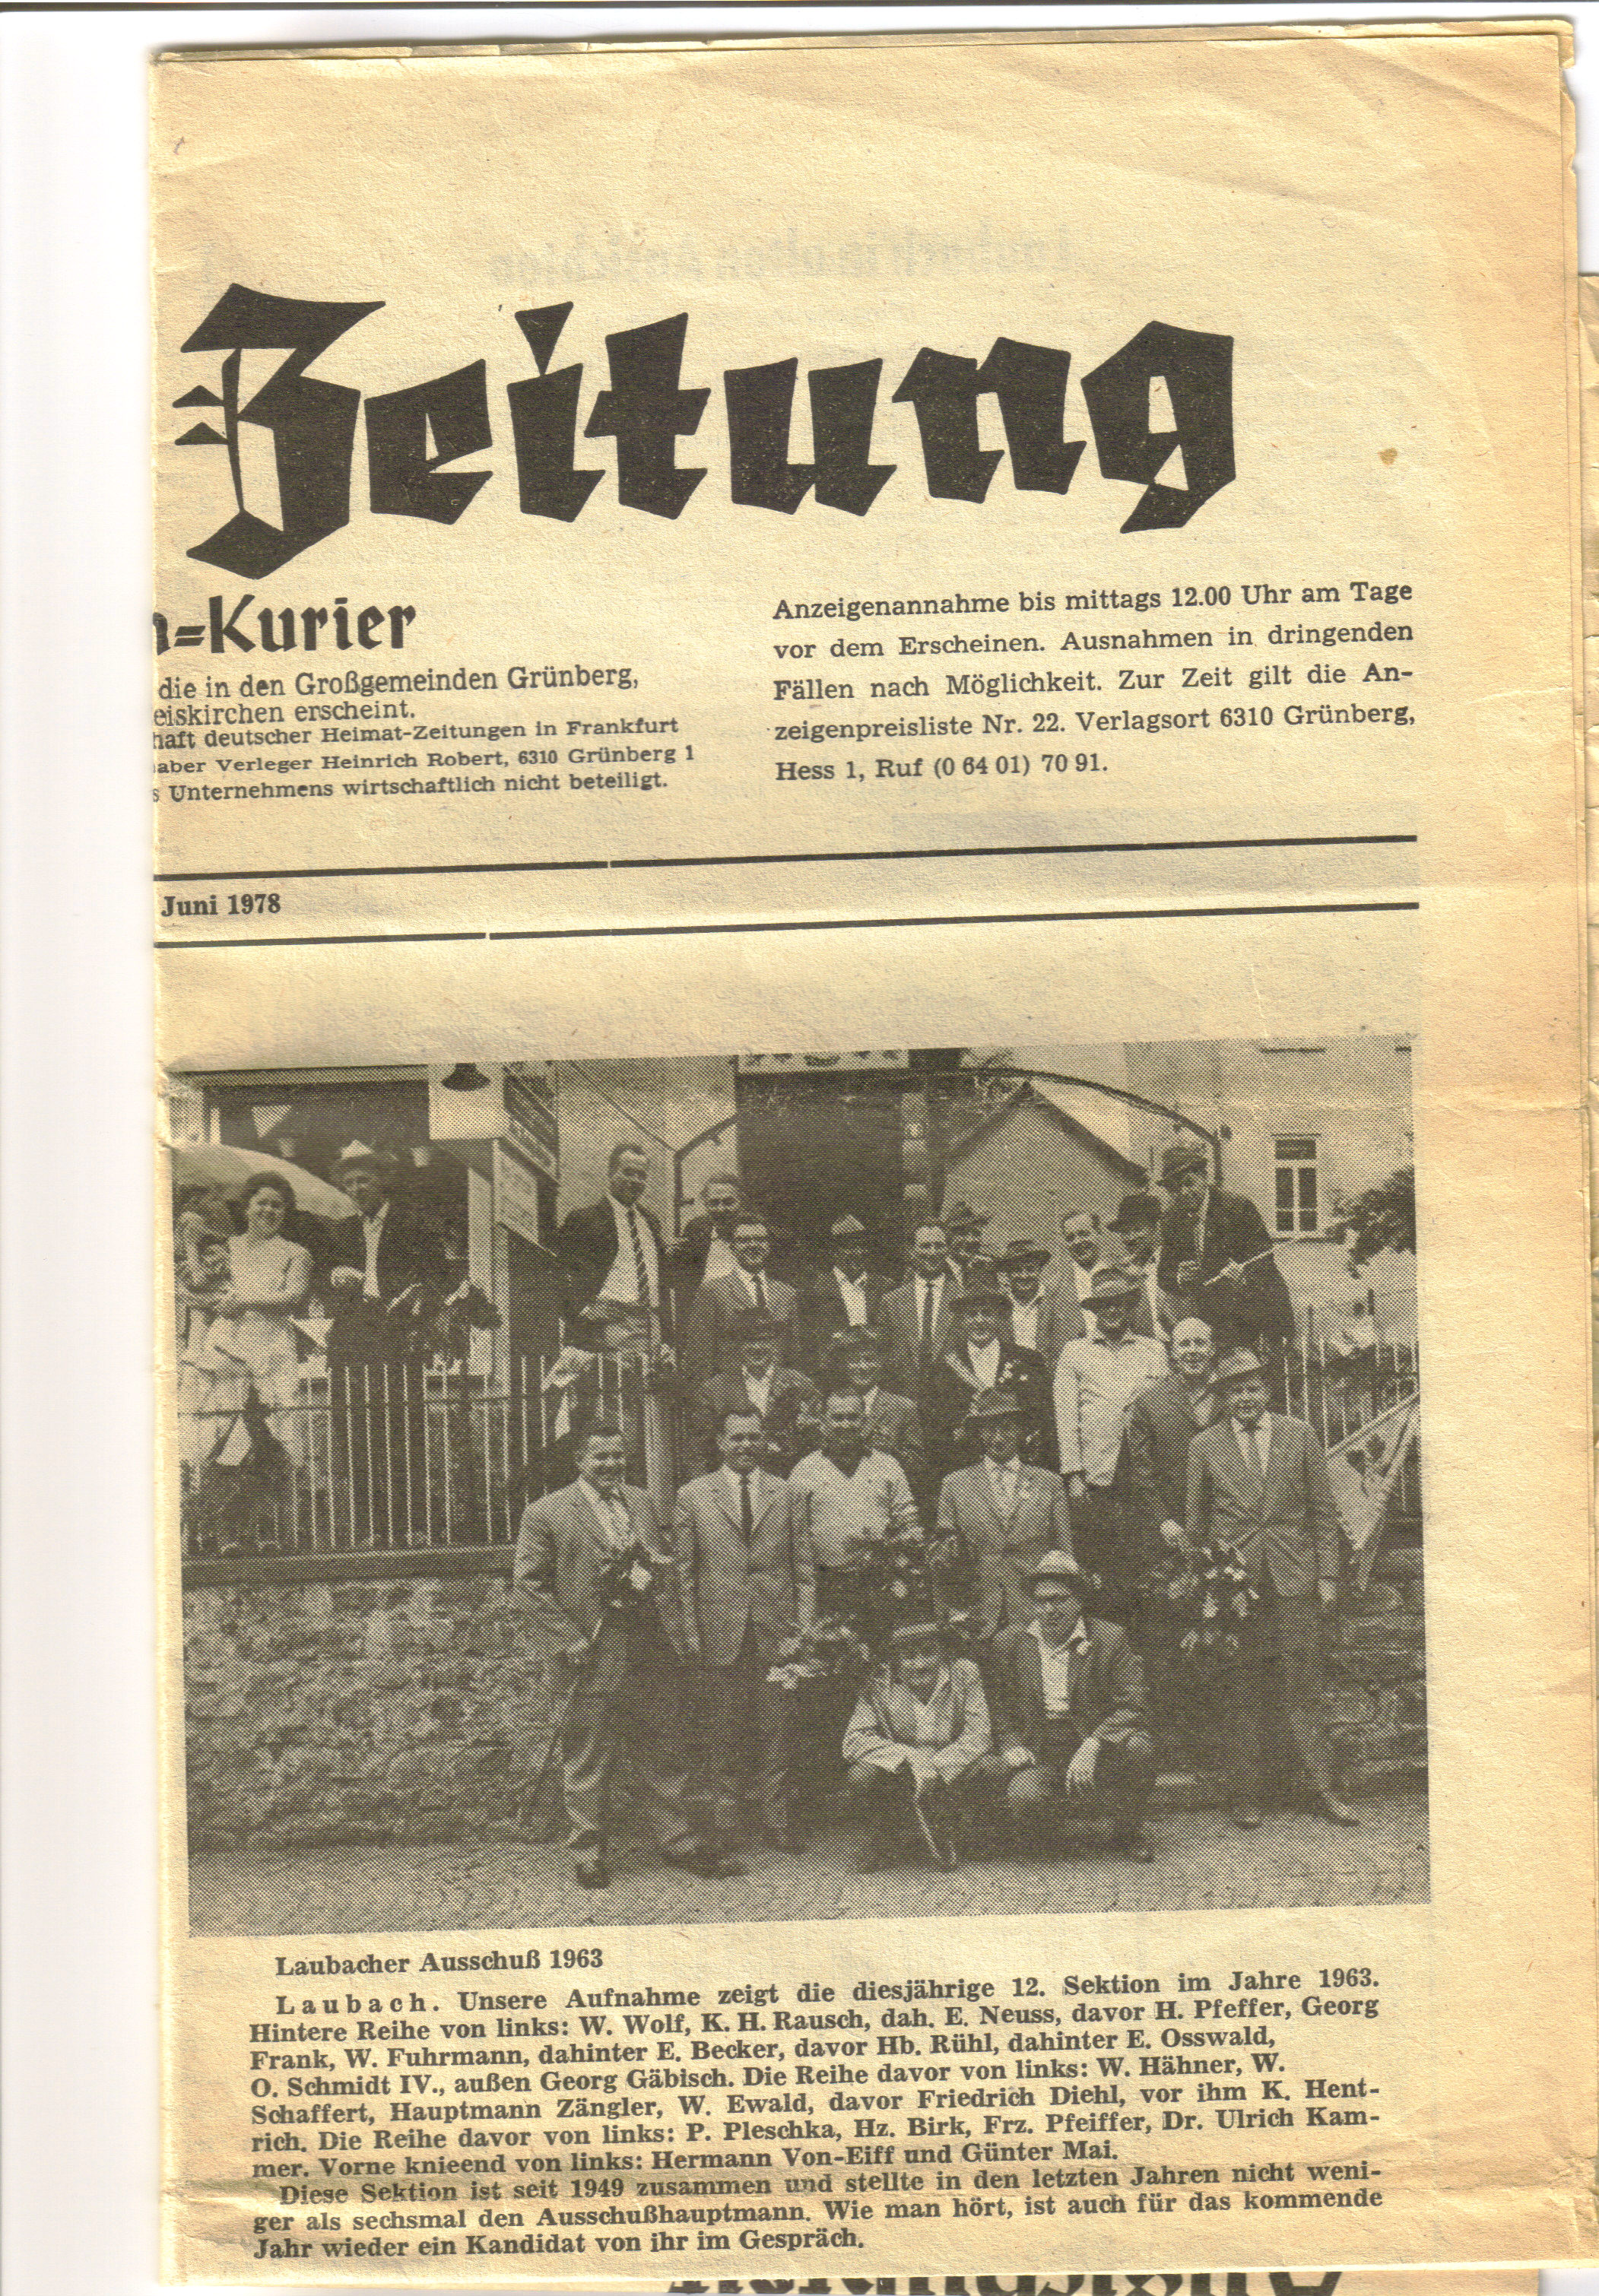 Laubacher Ausschussfest, History 055